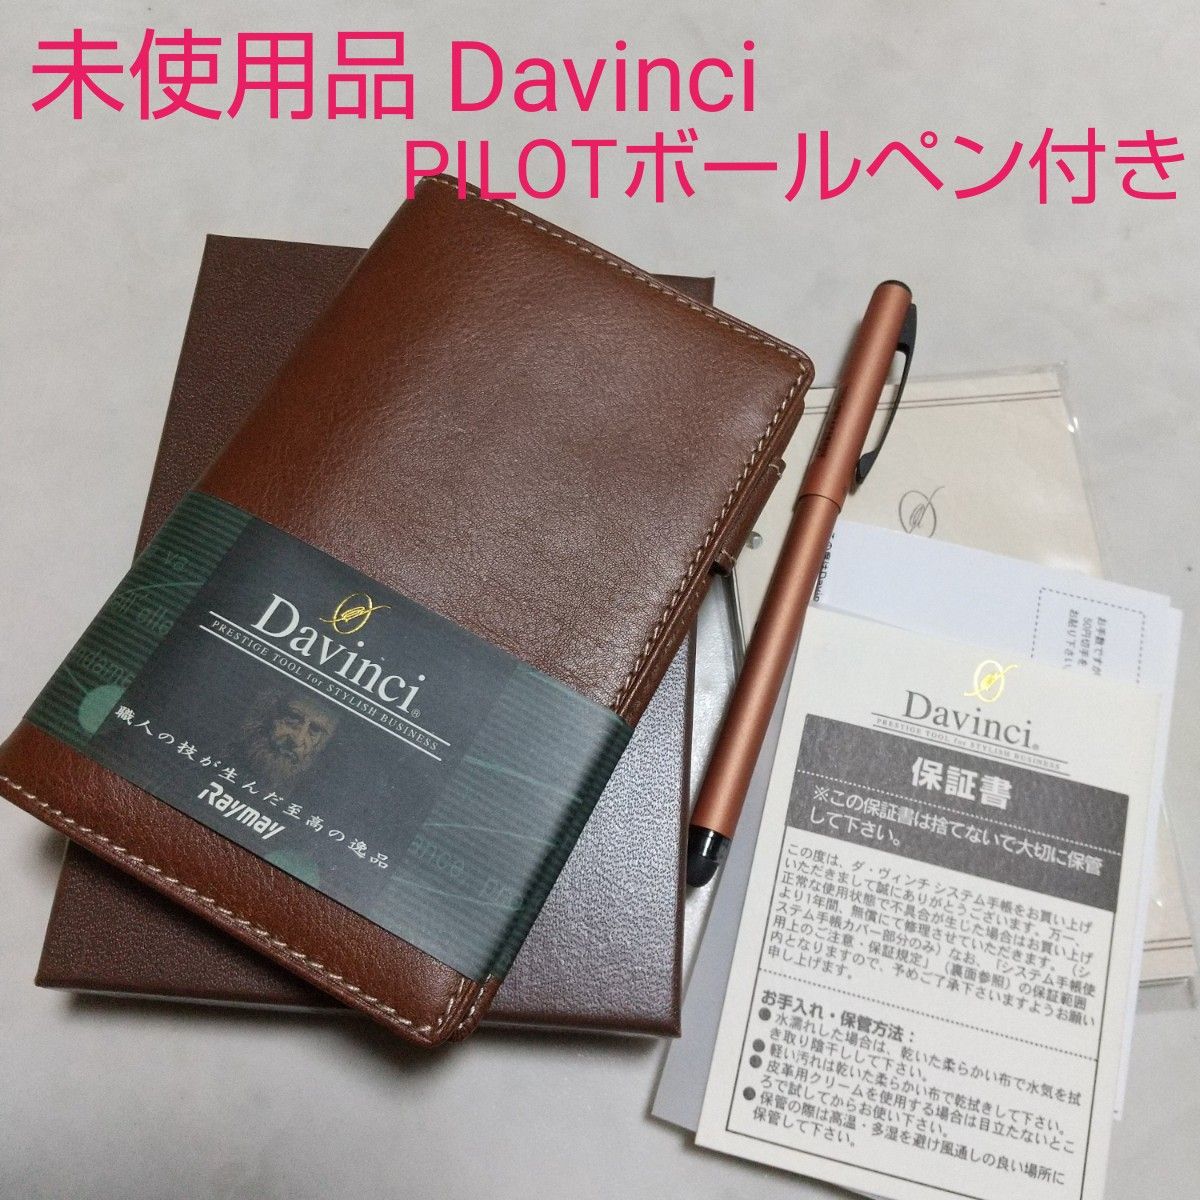 未使用品 Davinci ダヴィンチ システム手帳 PILOT ボールペン付き 本革 カードケース